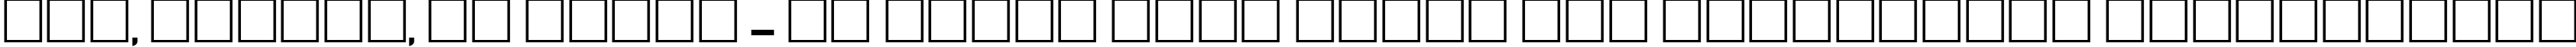 Пример написания шрифтом AnnaCTT Bold текста на украинском